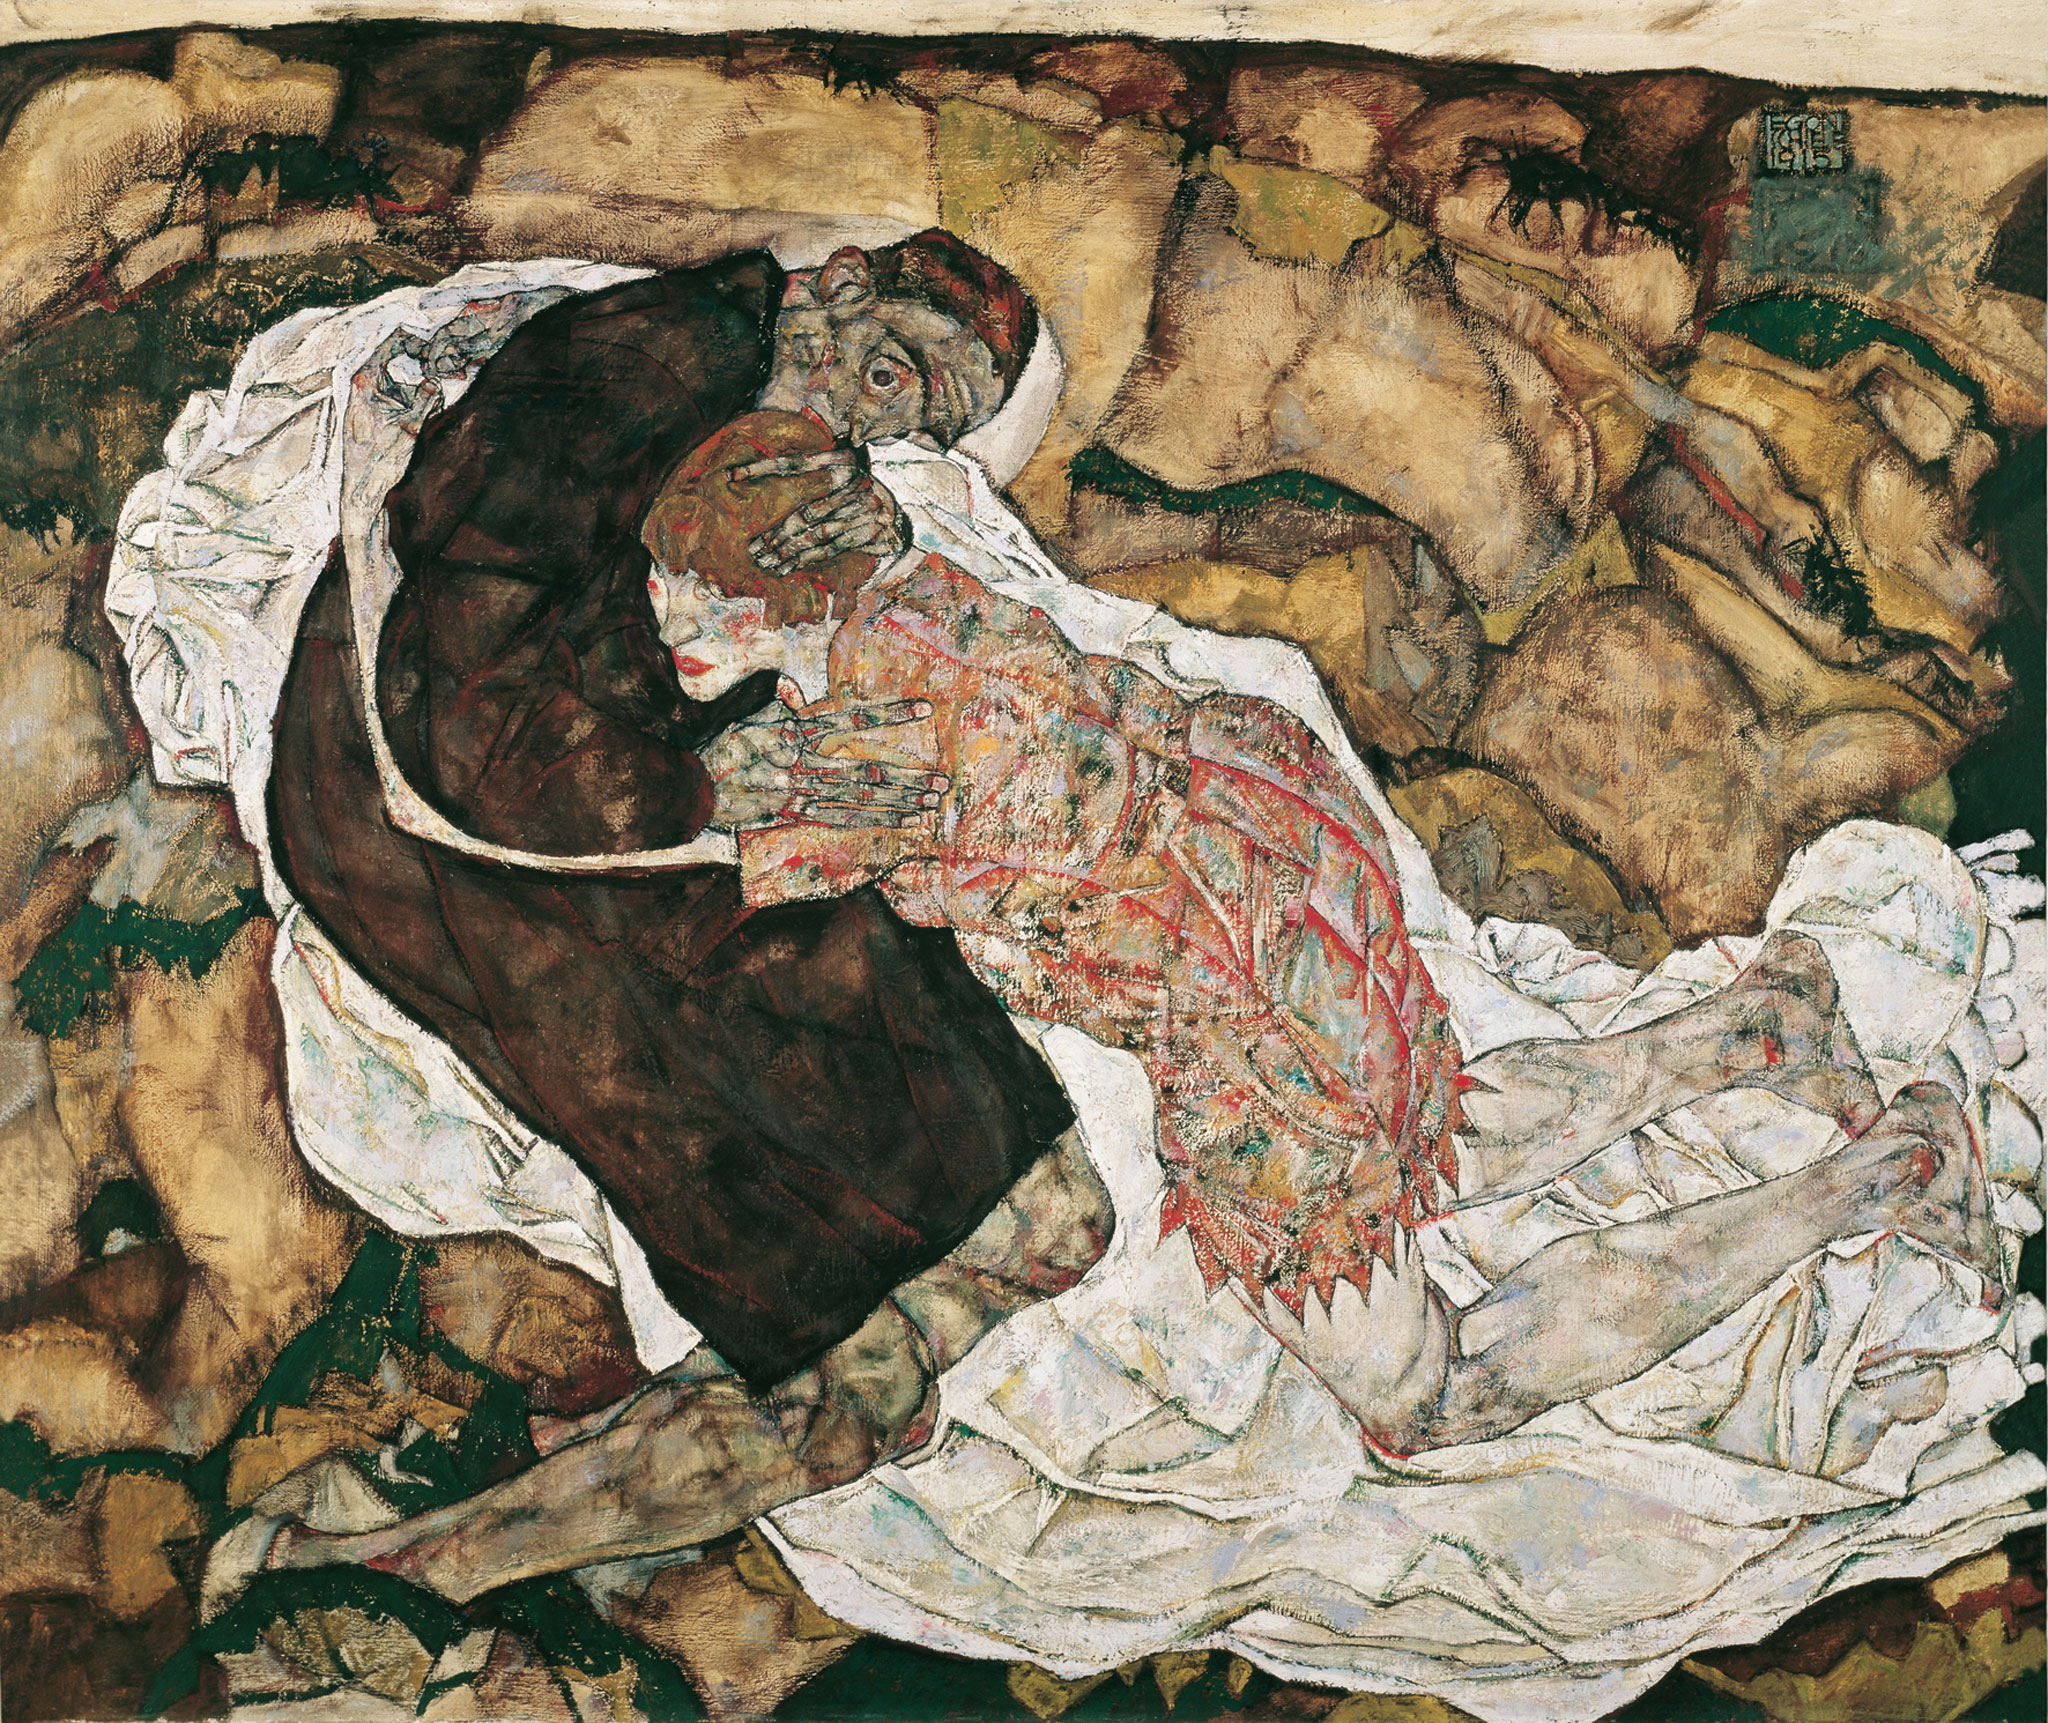 Moartea și fecioara by Egon Schiele - 1915 - 89.5 x 125.5 cm 